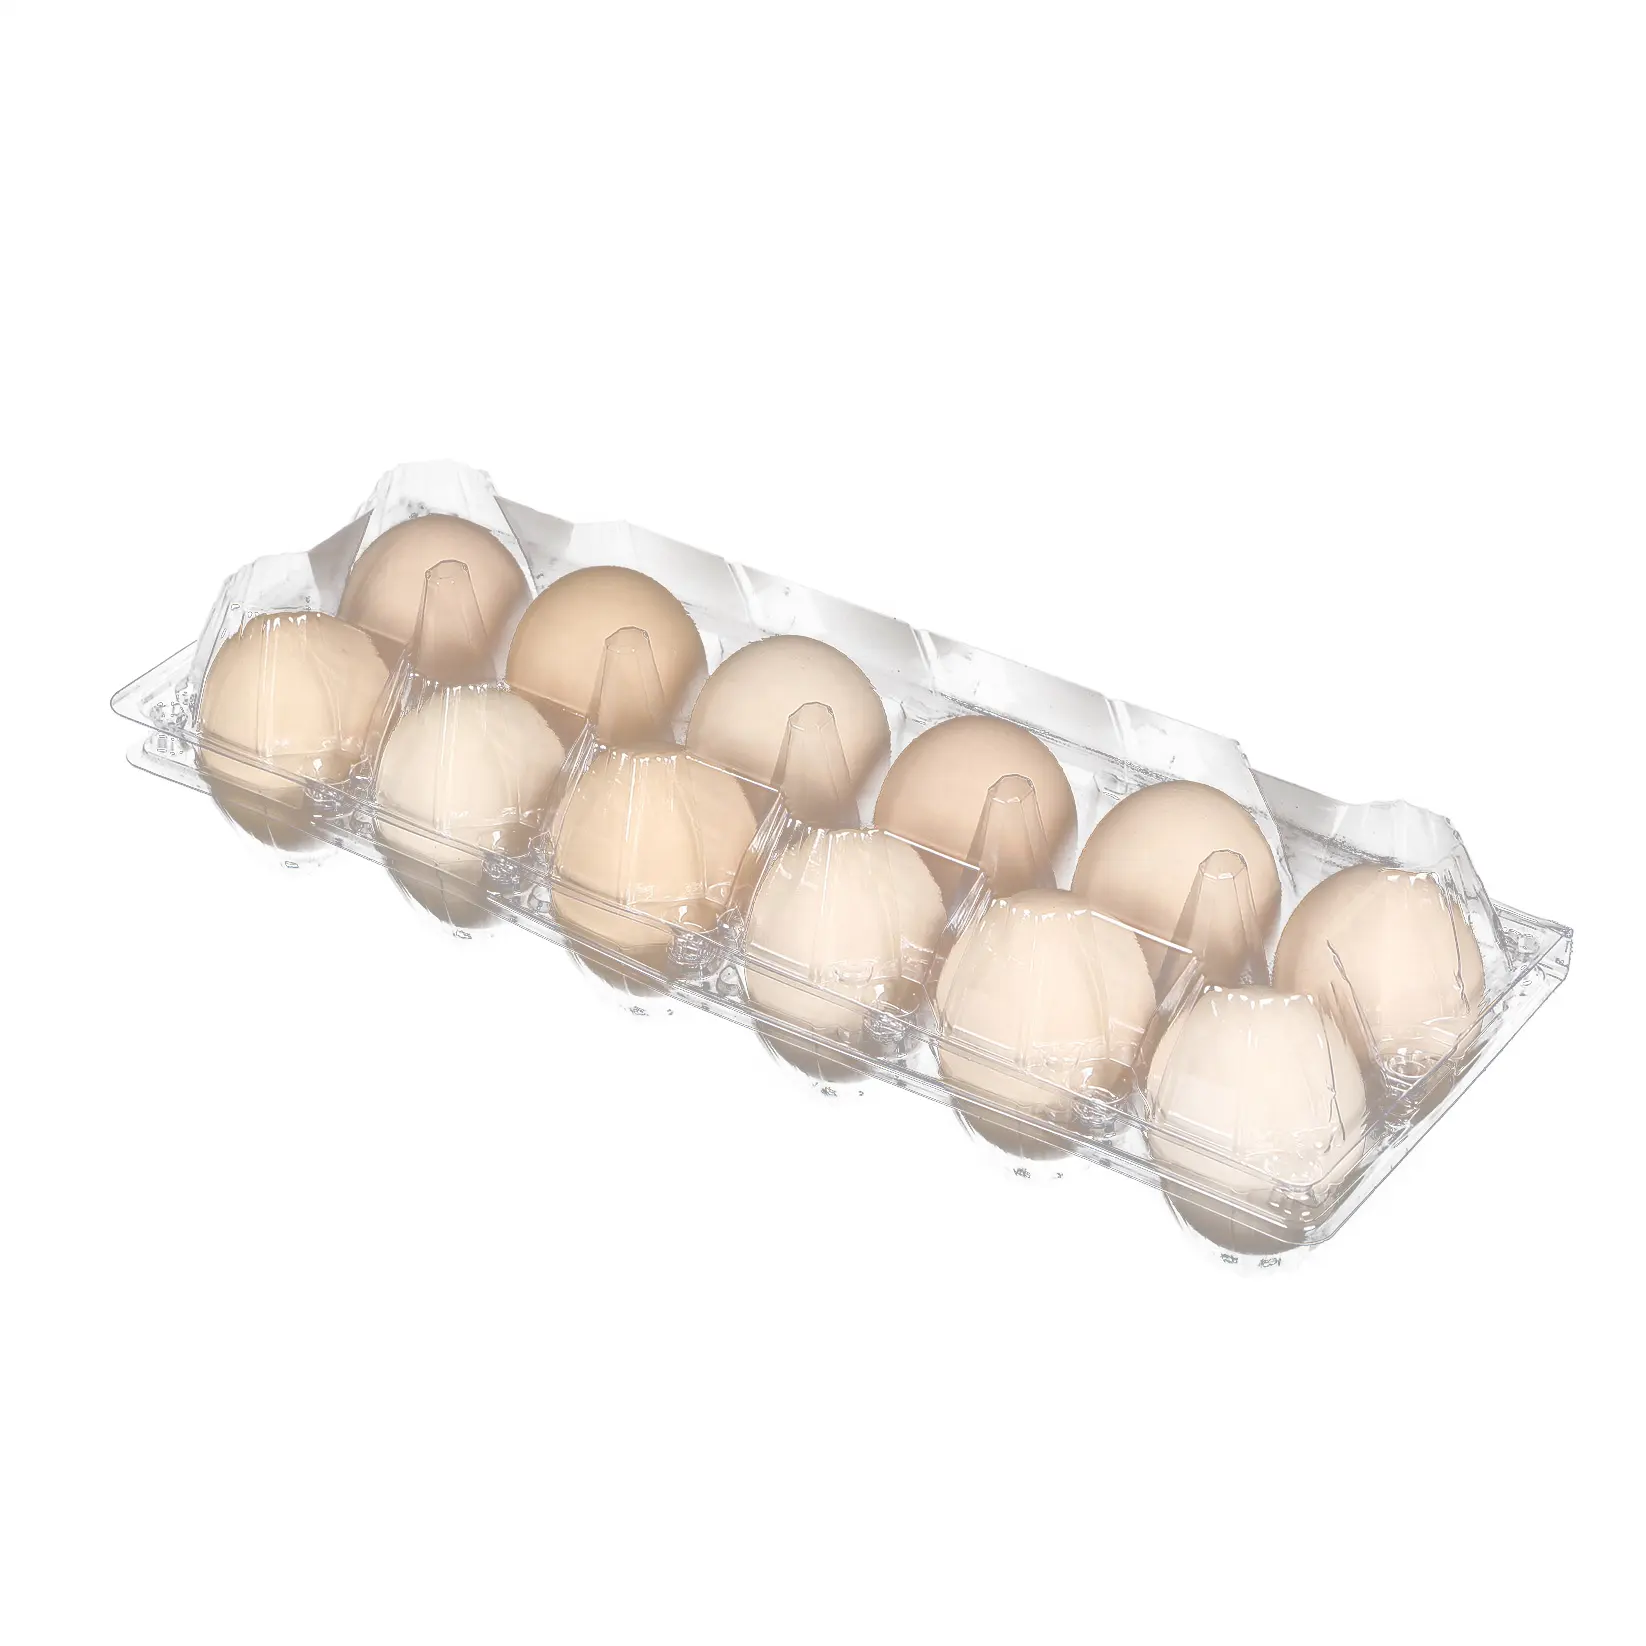 12 fori Jumbo grandi uova di pollo uova di anatra trasparente trasparente per uso alimentare pieghevole tutta la vendita in cina